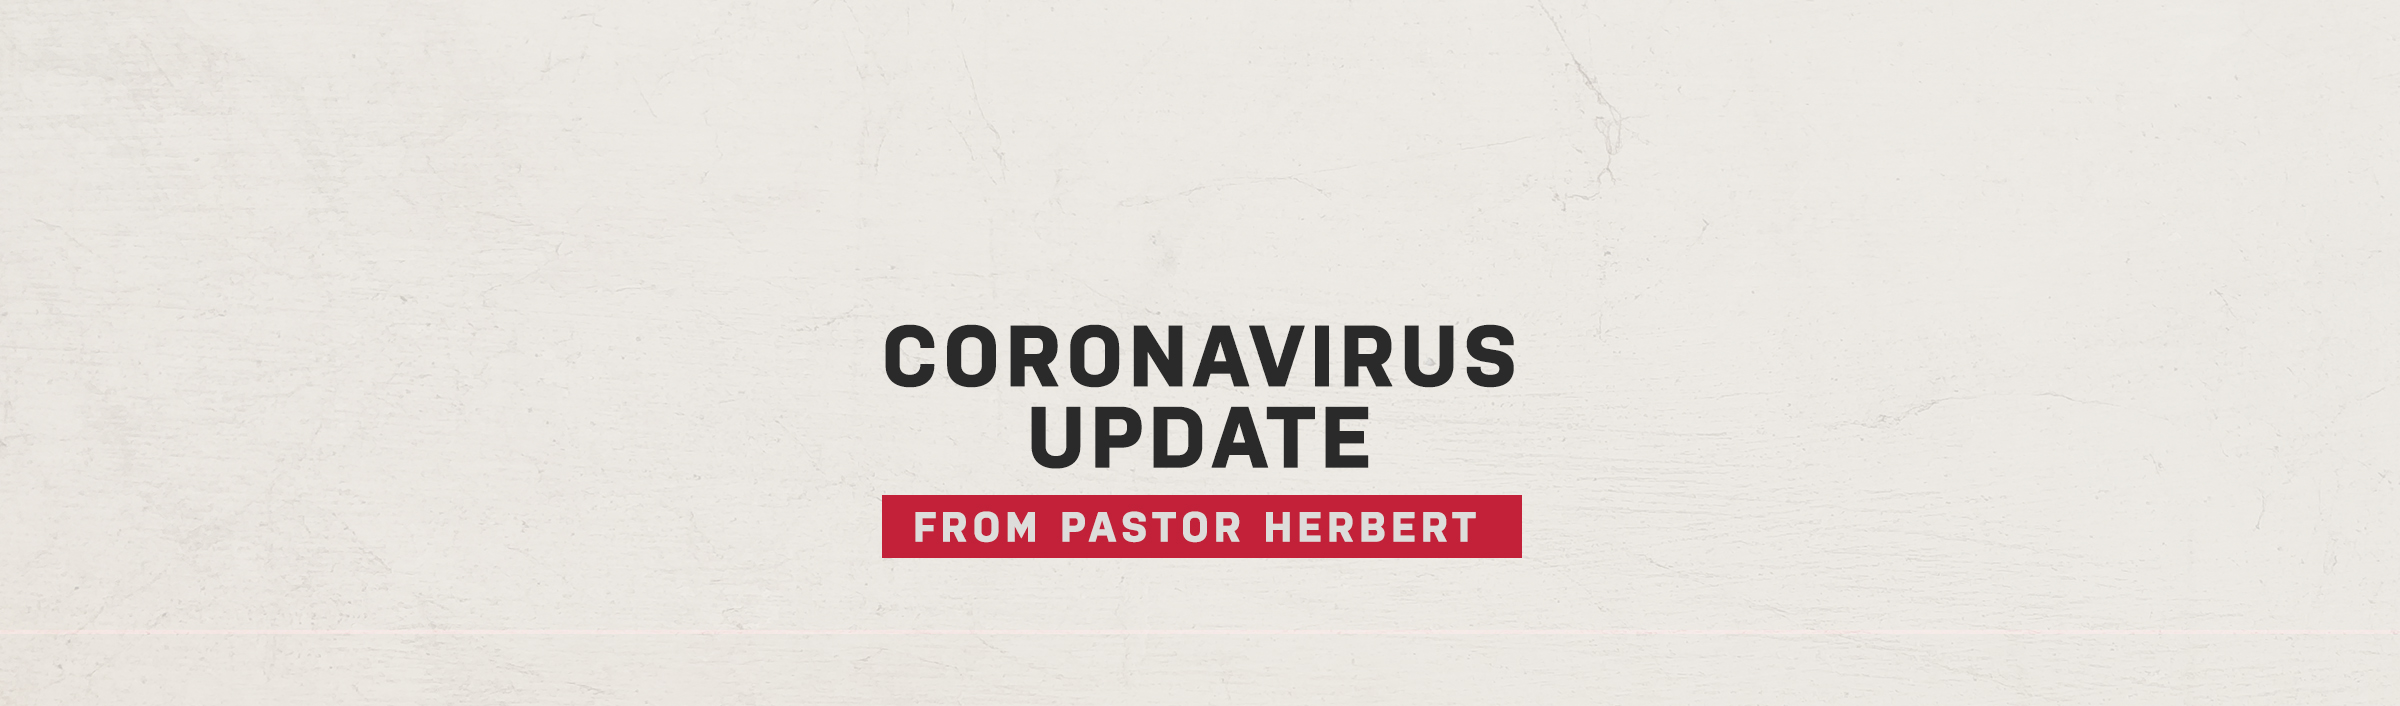 Coronavirus Update From Pastor Herbert